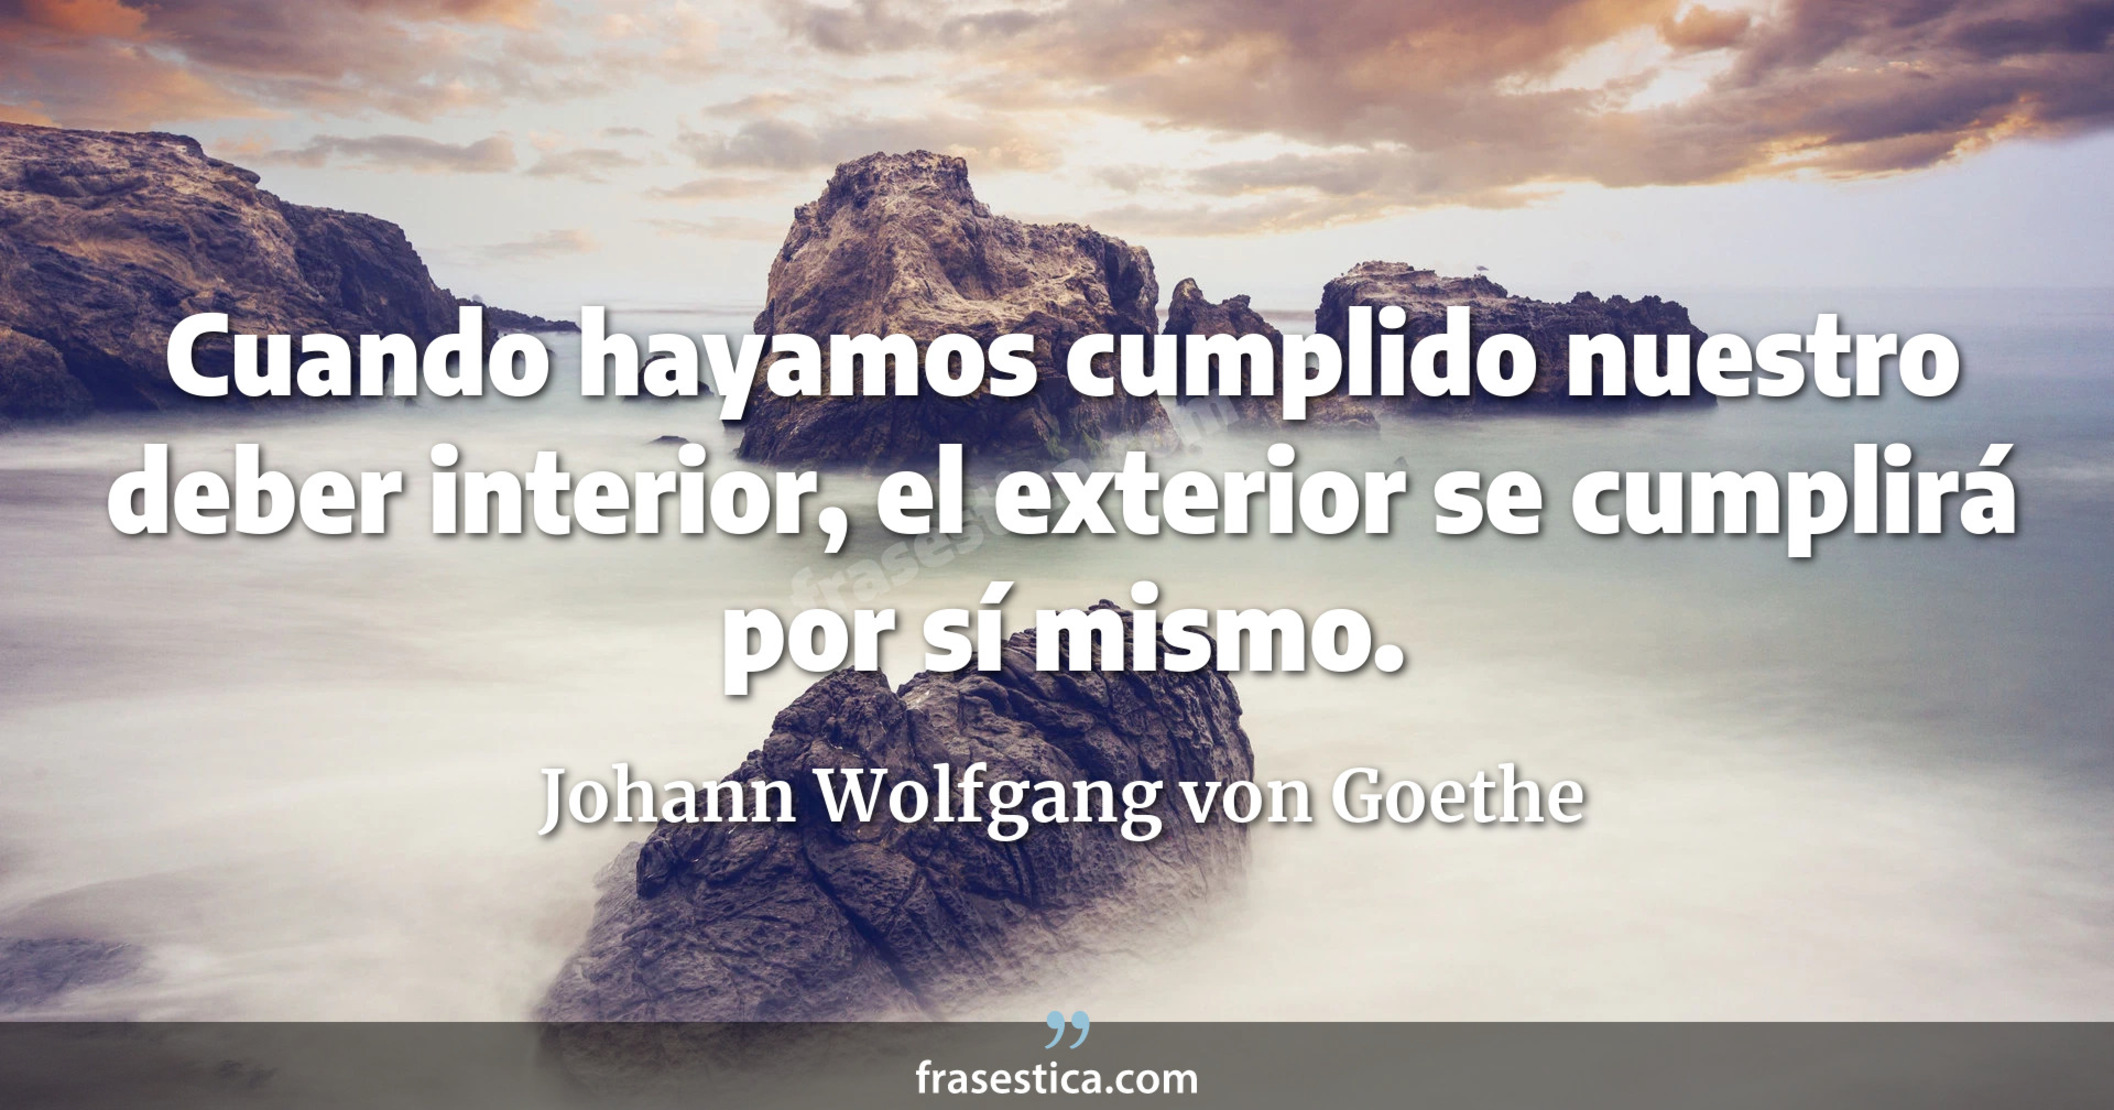 Cuando hayamos cumplido nuestro deber interior, el exterior se cumplirá por sí mismo. - Johann Wolfgang von Goethe